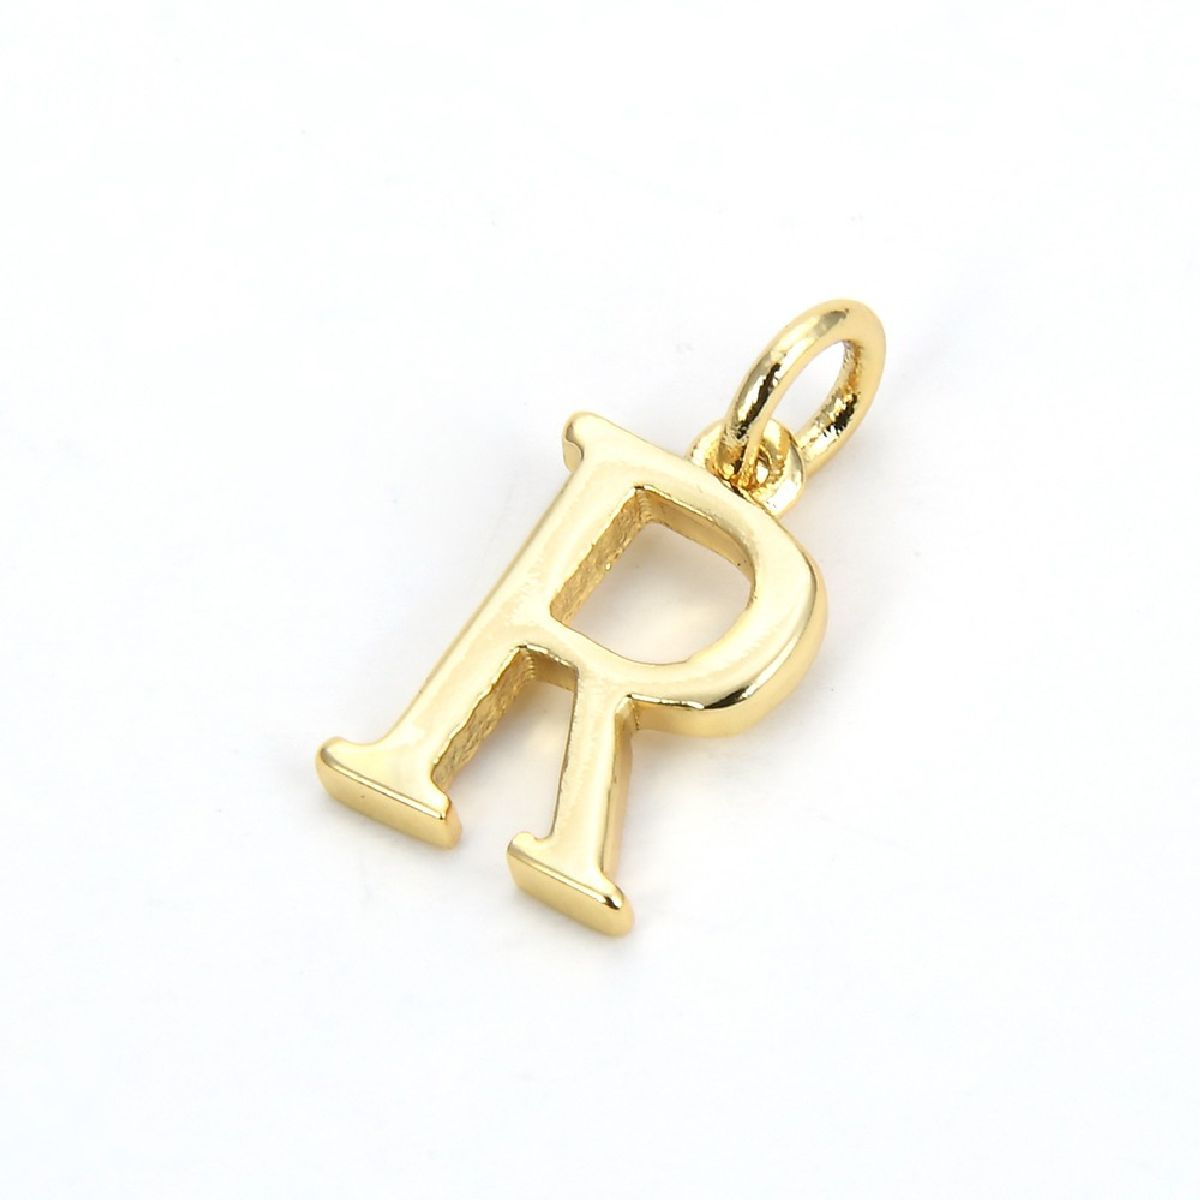 Initial Letter Alphabets Gold Copper Pendant Charm Women